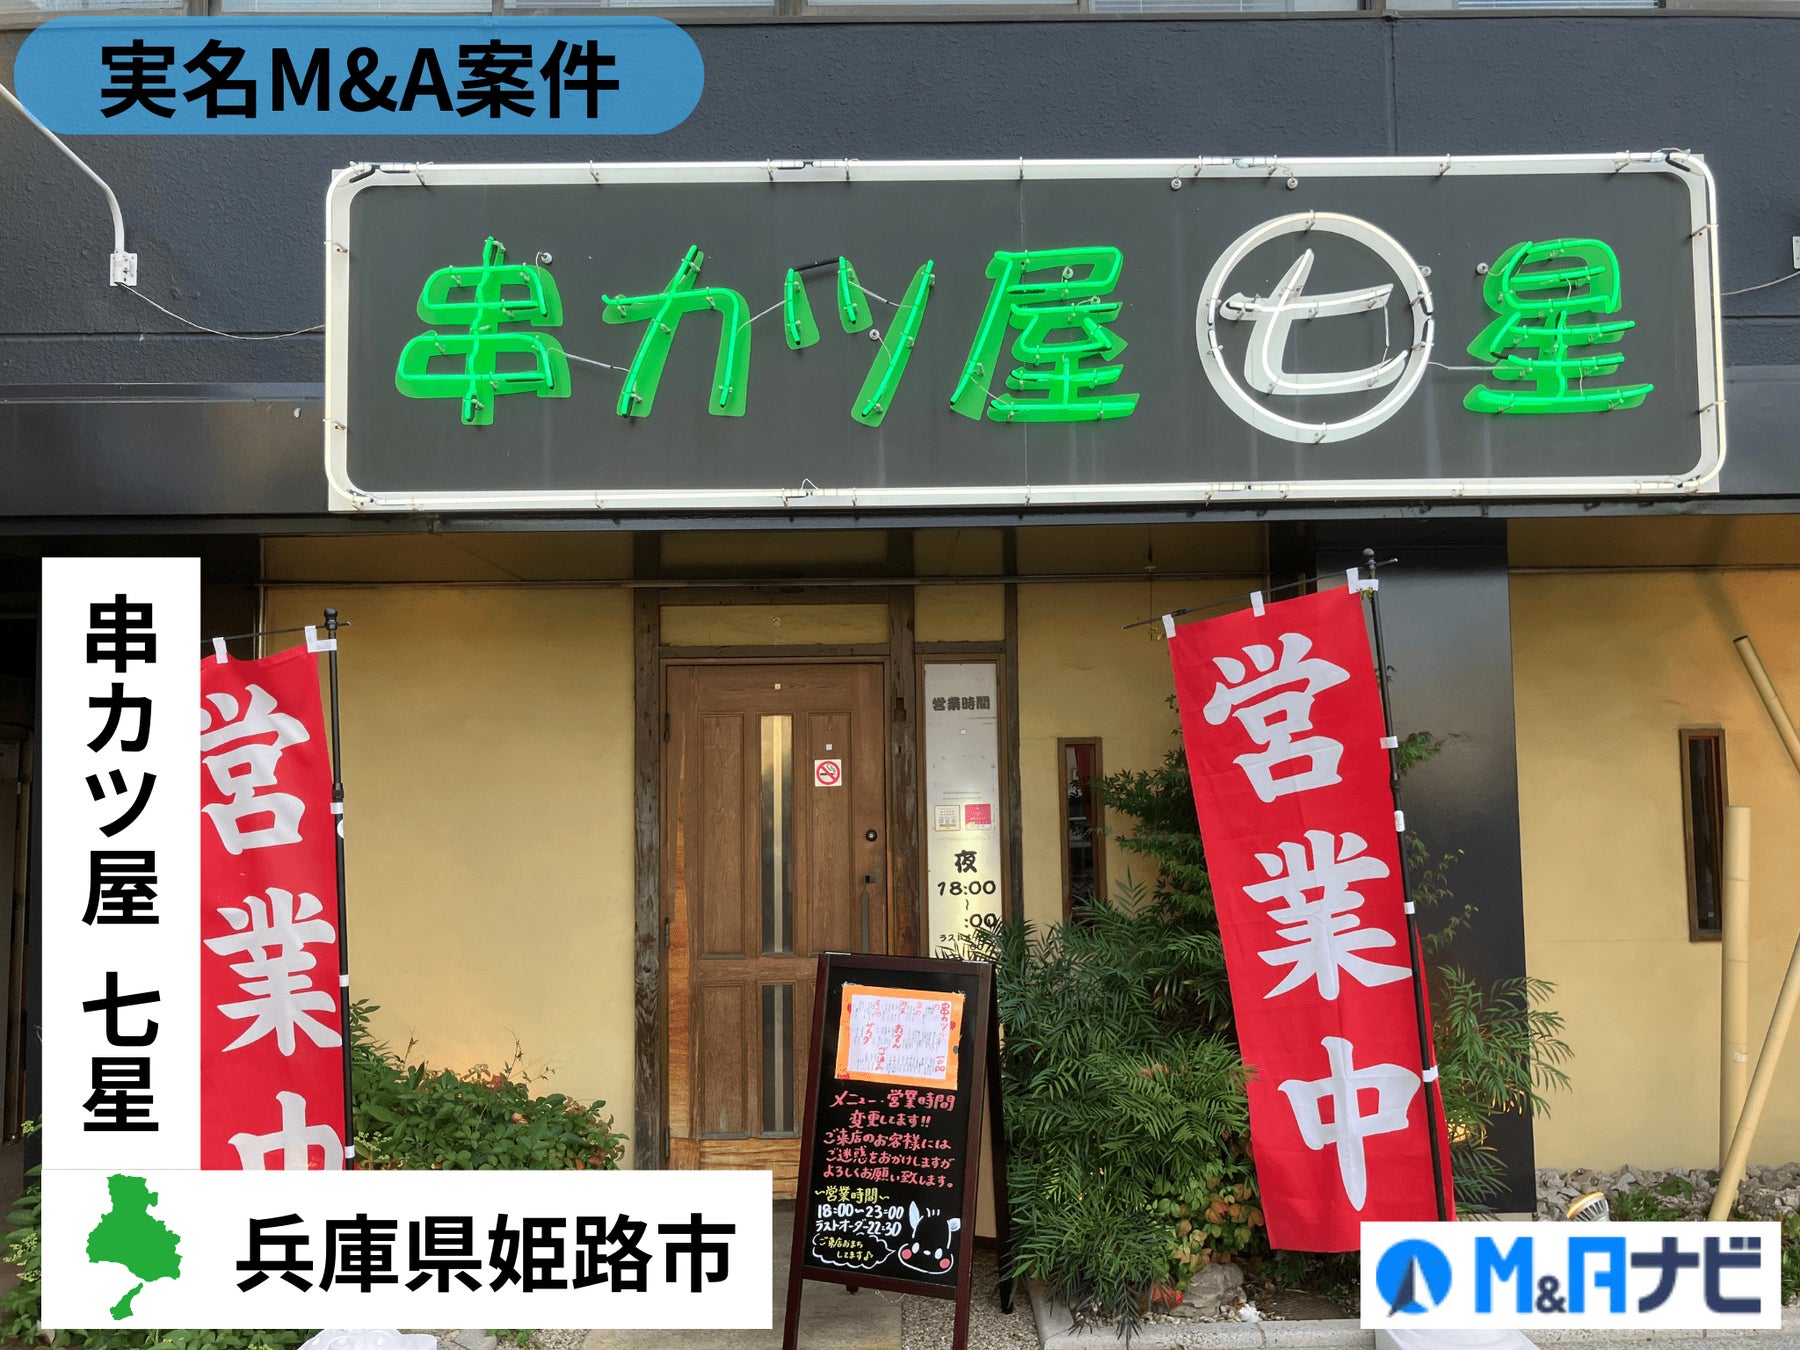 【実名M&A案件】兵庫県|姫路駅の『串カツ屋七星 本店』が譲受先を募集！